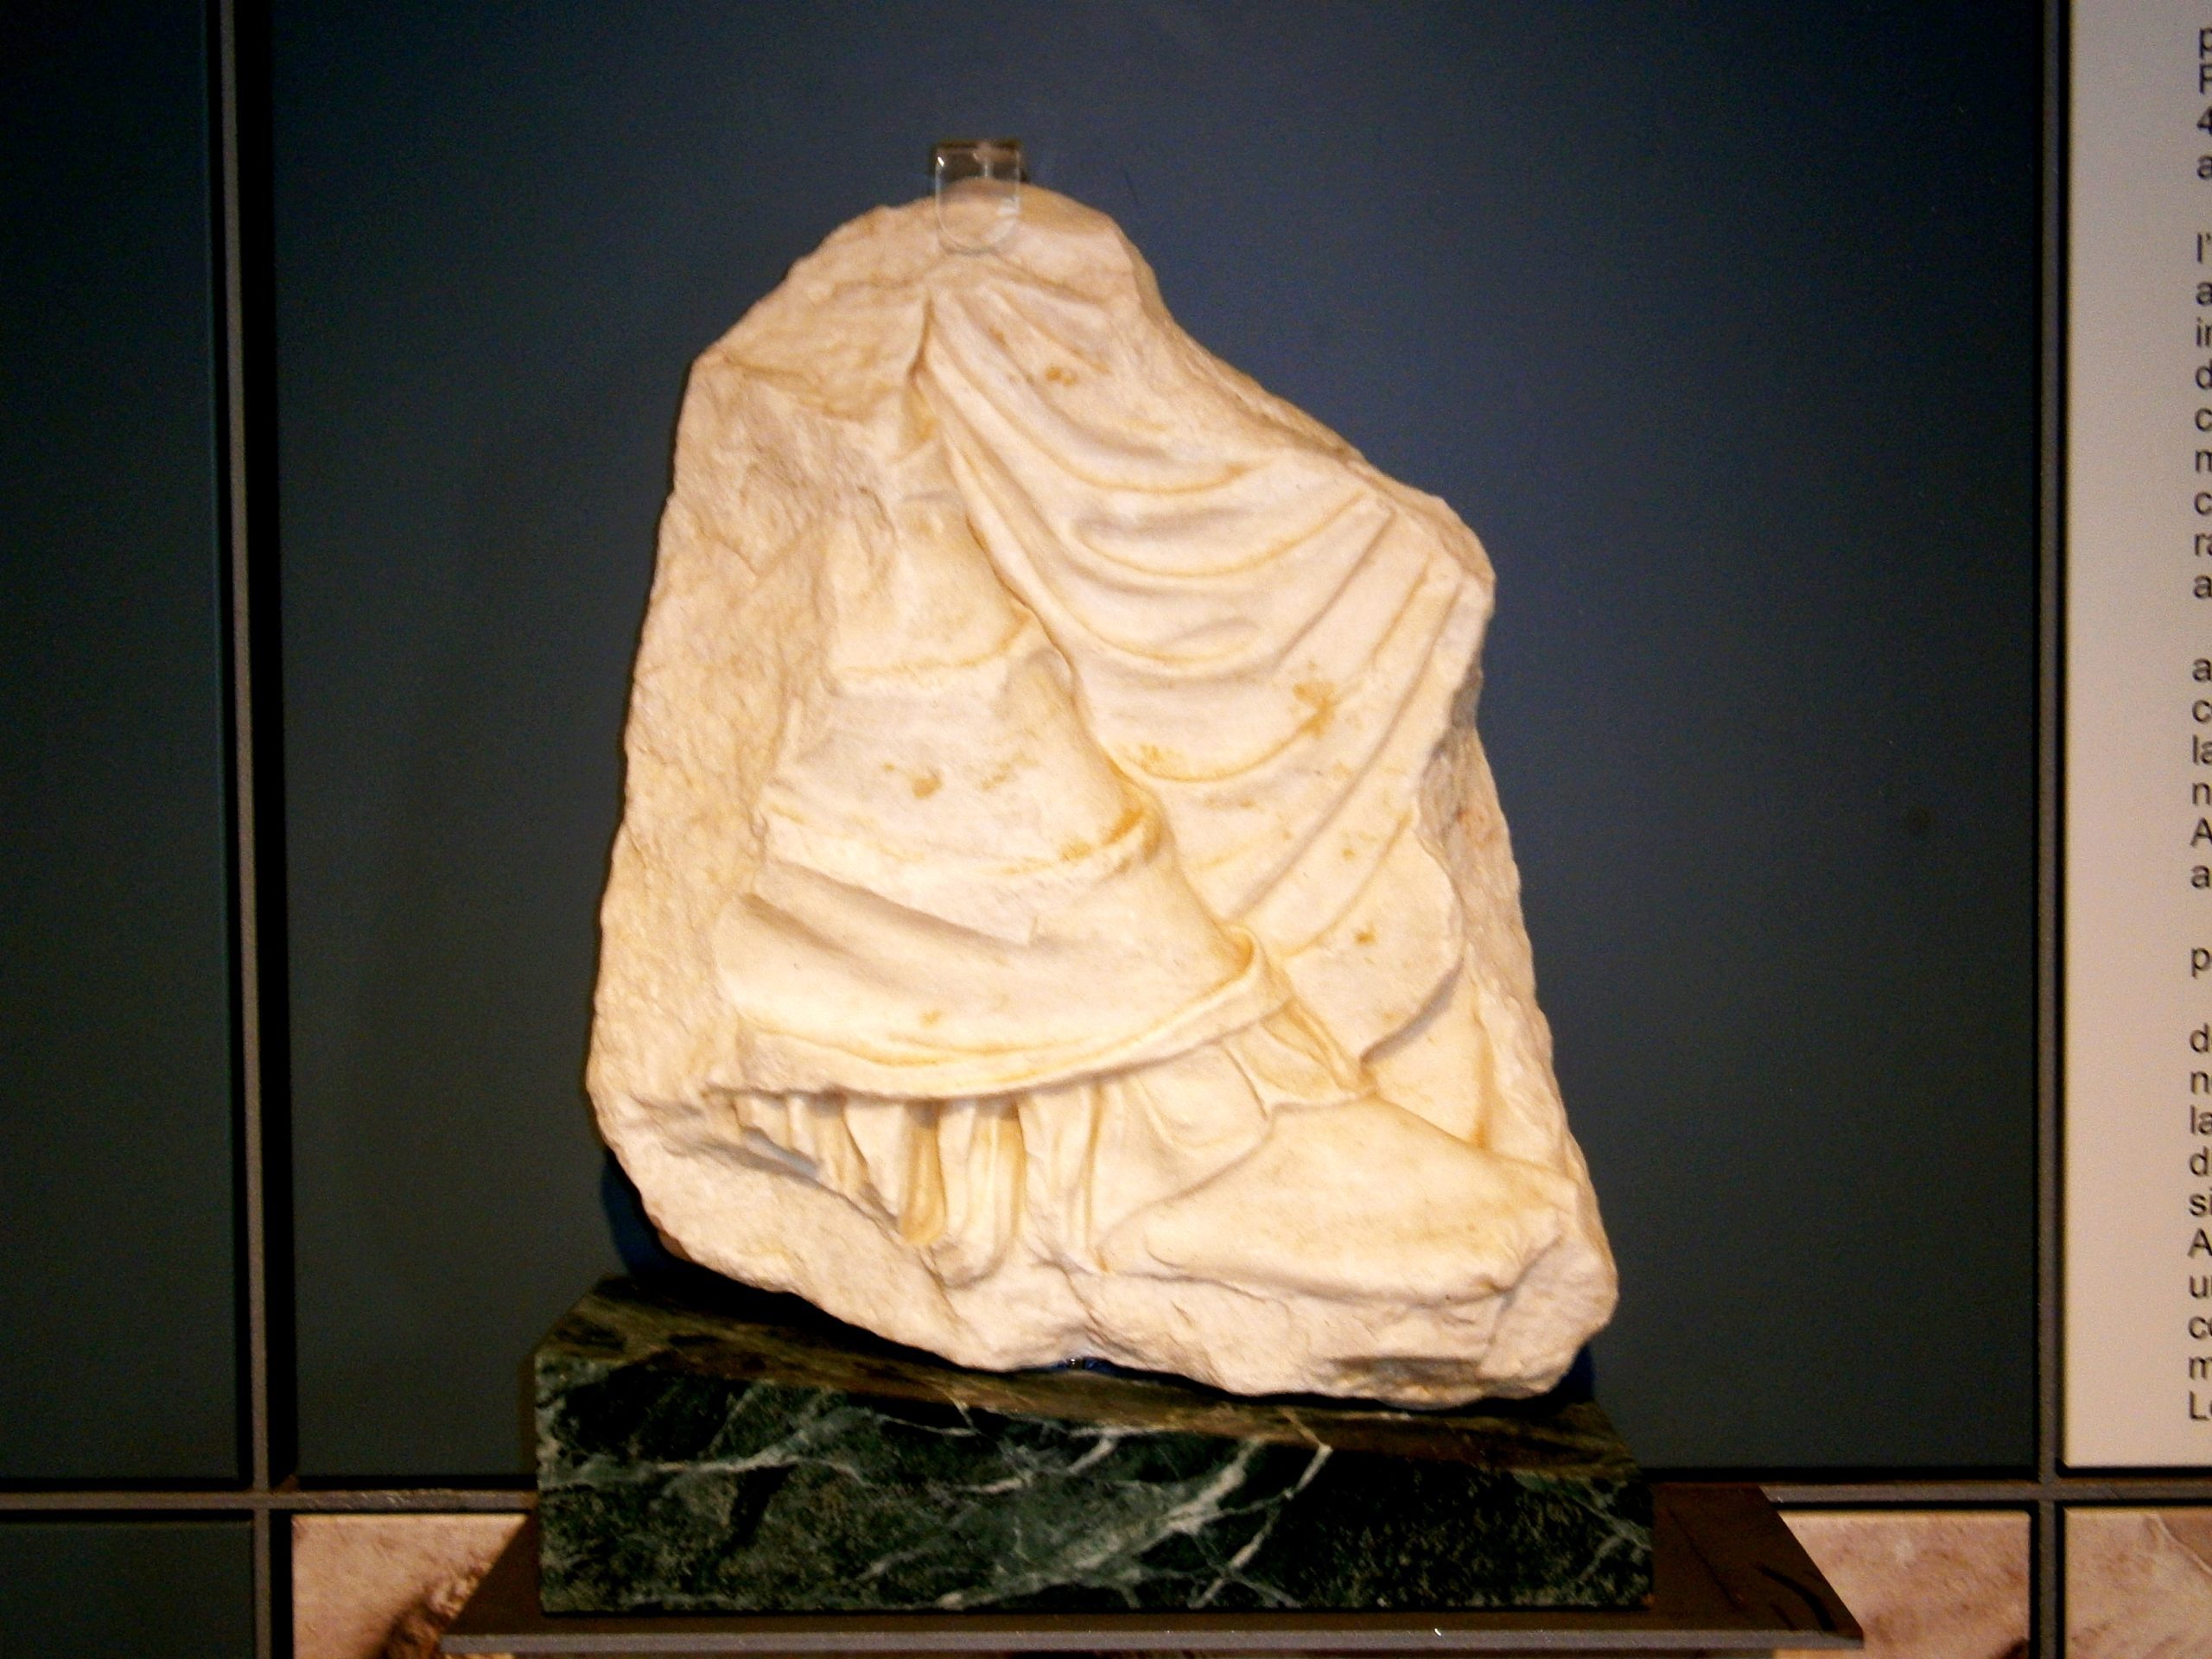 Το απότμημα του λίθου VI από την ανατολική ζωφόρο με το πόδι της Αρτέμιδας που έρχεται από το Μουσείο A. Salinas του Παλέρμο.